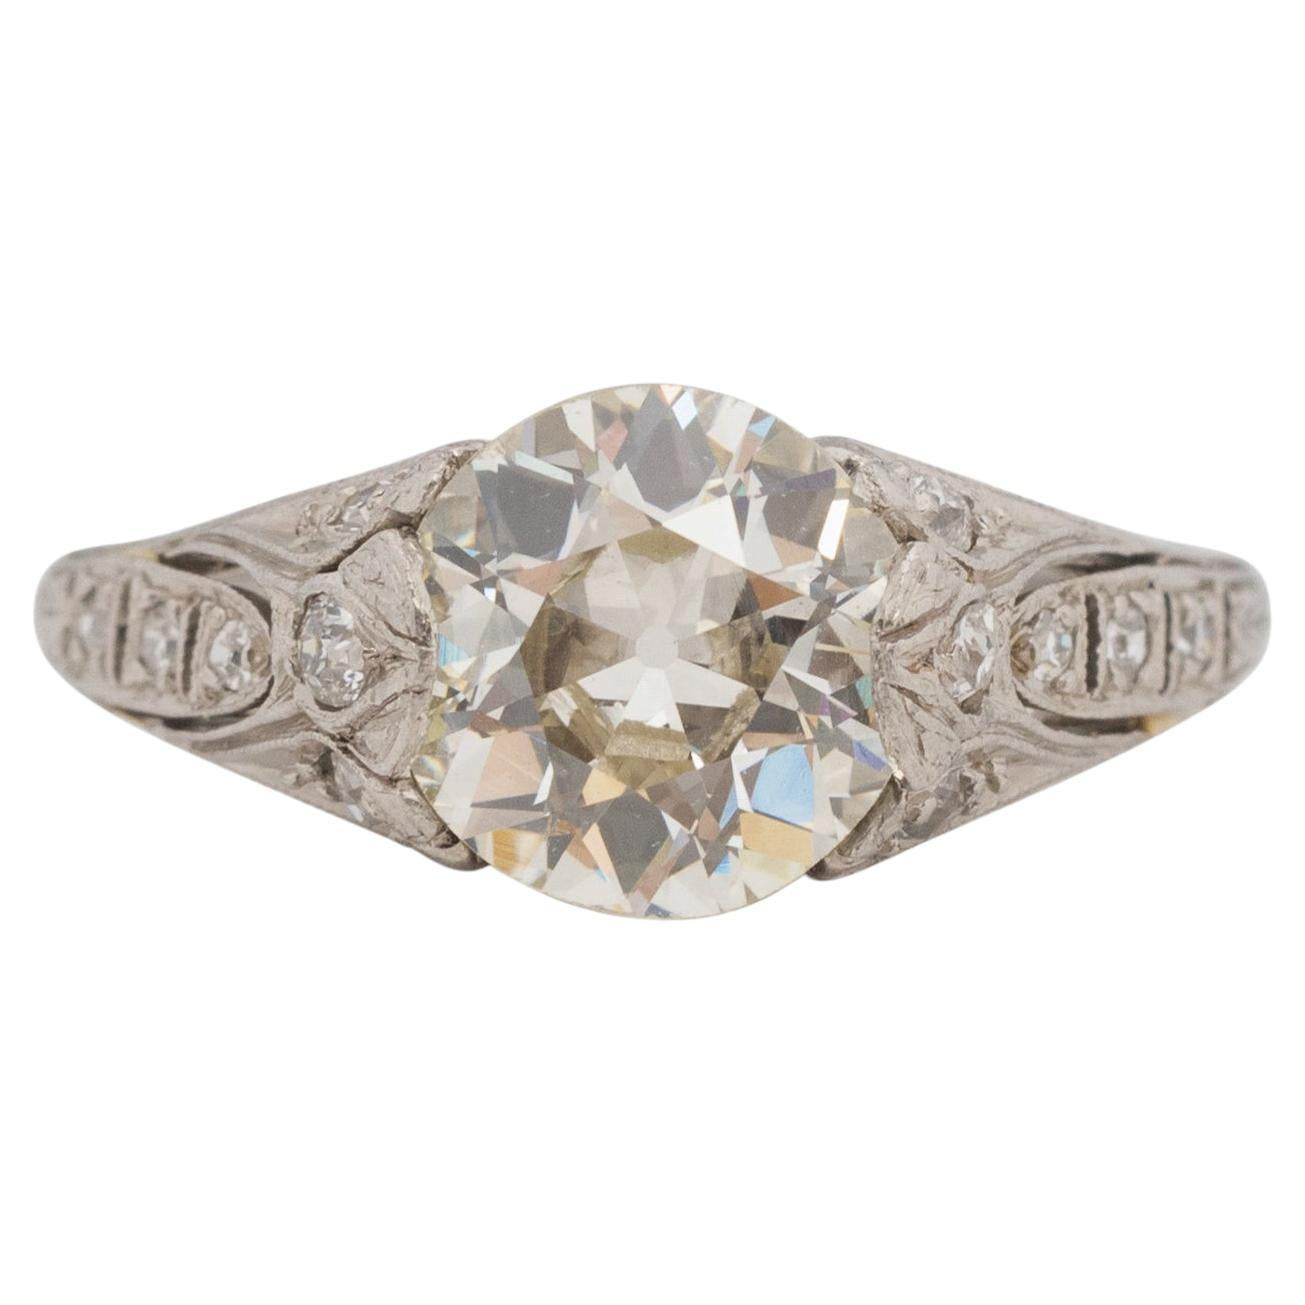 1.99 Carat Art Deco Diamond Platinum Engagement Ring